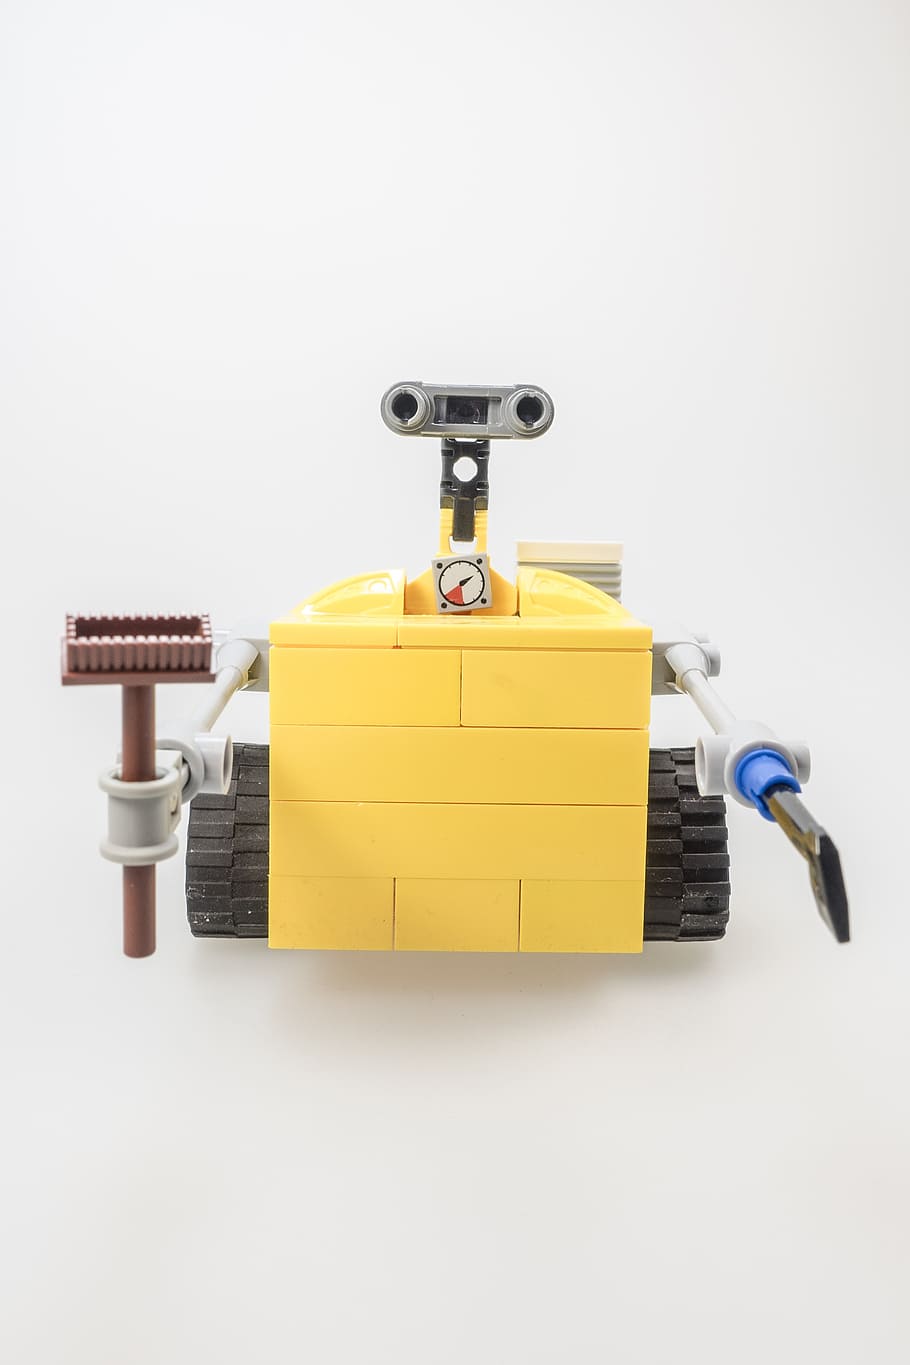 amarillo, gris, wall-e toy, lego, wall-e, figura, culto, computadora, robot, máquina